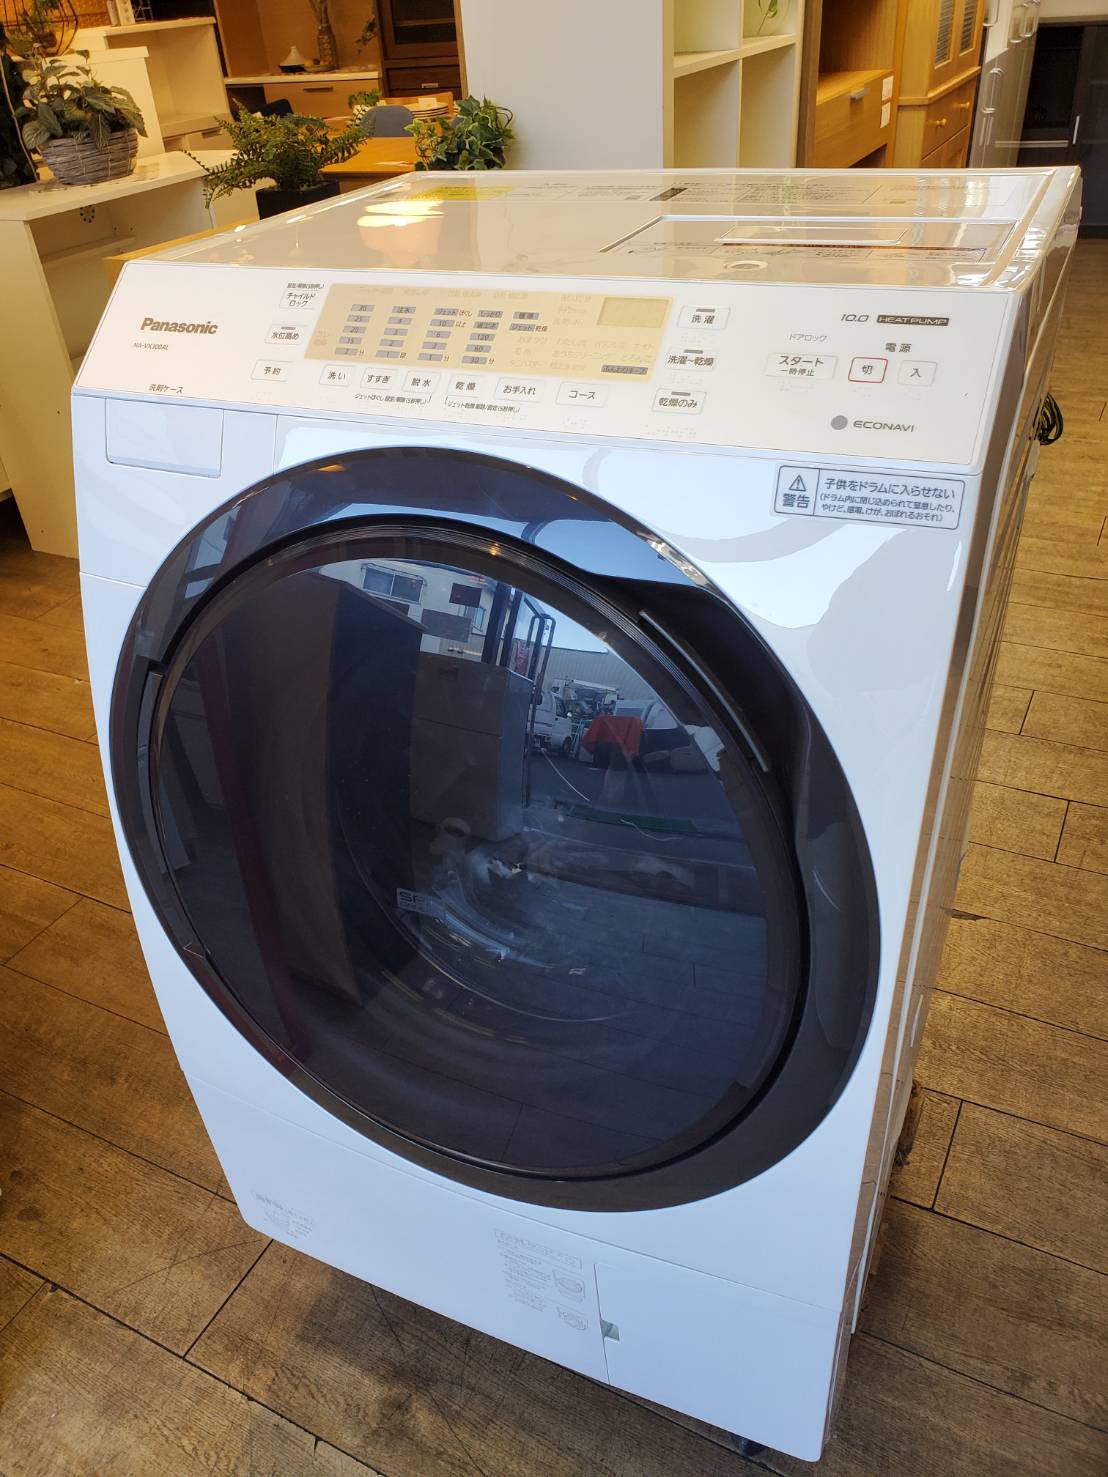 Panasonicドラム式洗濯機2013年式 - 埼玉県の家電